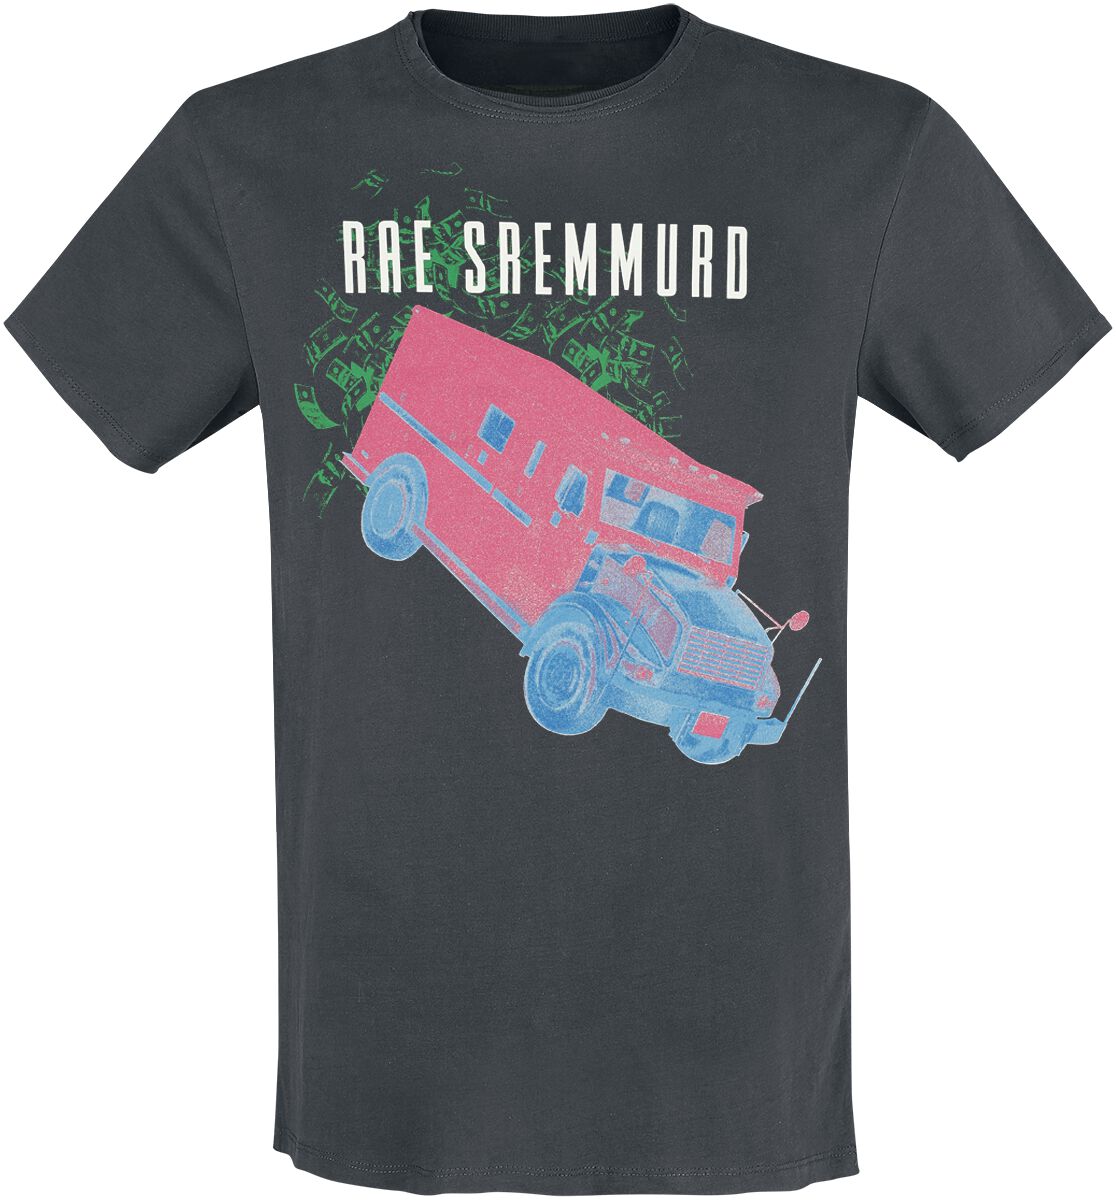 Rae Sremmurd T-Shirt - Amplified Collection - Cash Heist - S bis 3XL - für Männer - Größe XL - charcoal  - Lizenziertes Merchandise!